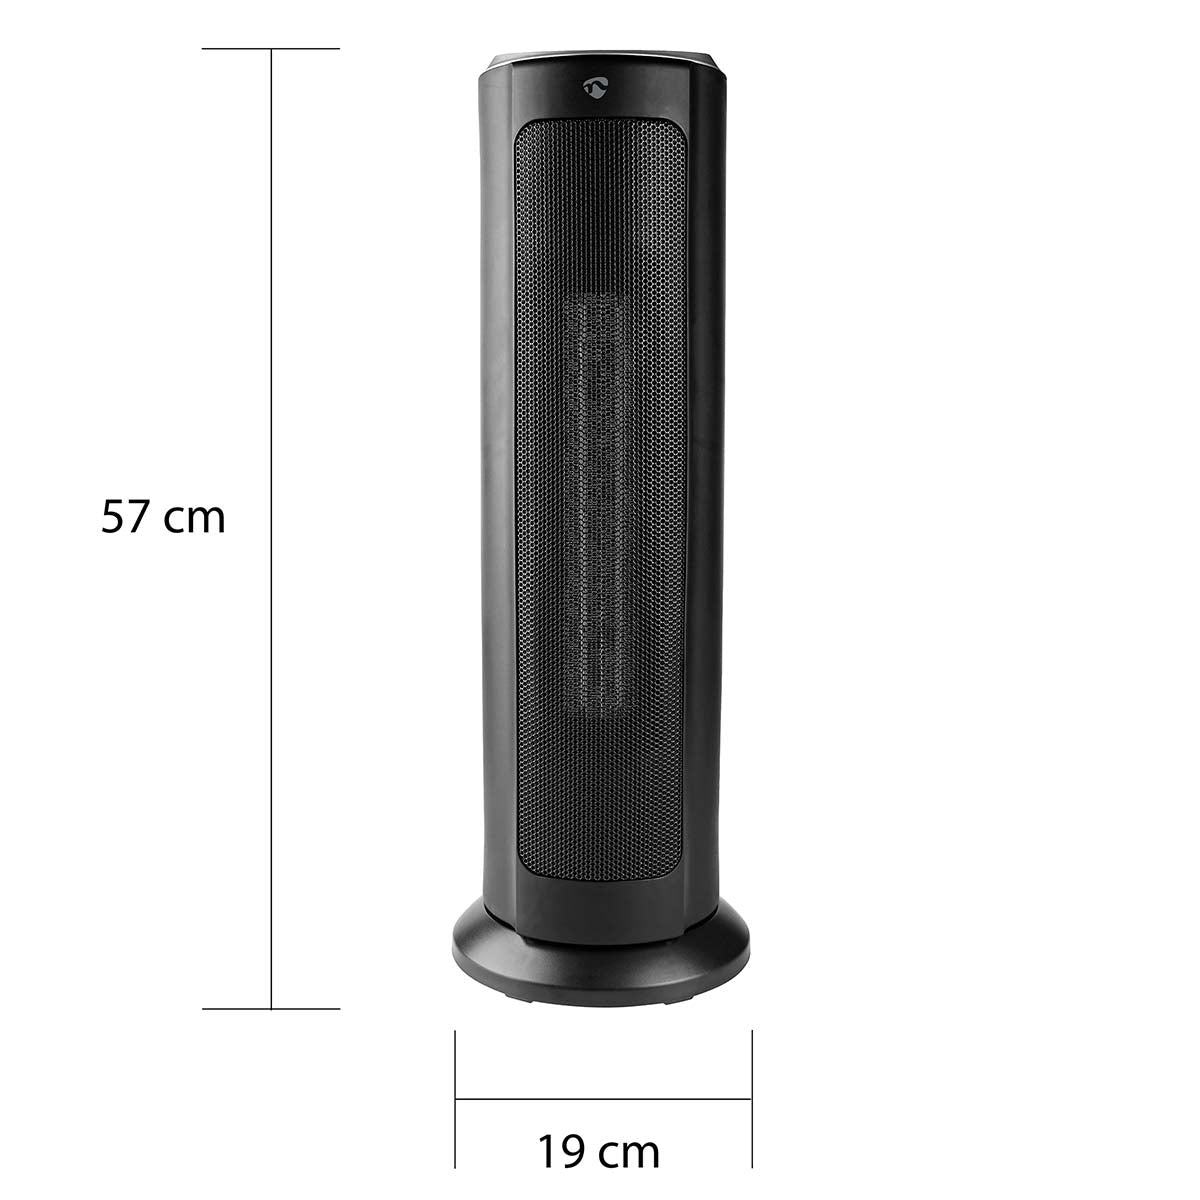 Nedis SmartLife Aquecedor com ventilador Wifi | Torre | 2000 W | 3 Definições de calor | Oscilação | Visor | 15 - 35 °C | Android™ / IOS | Preto | dimensões